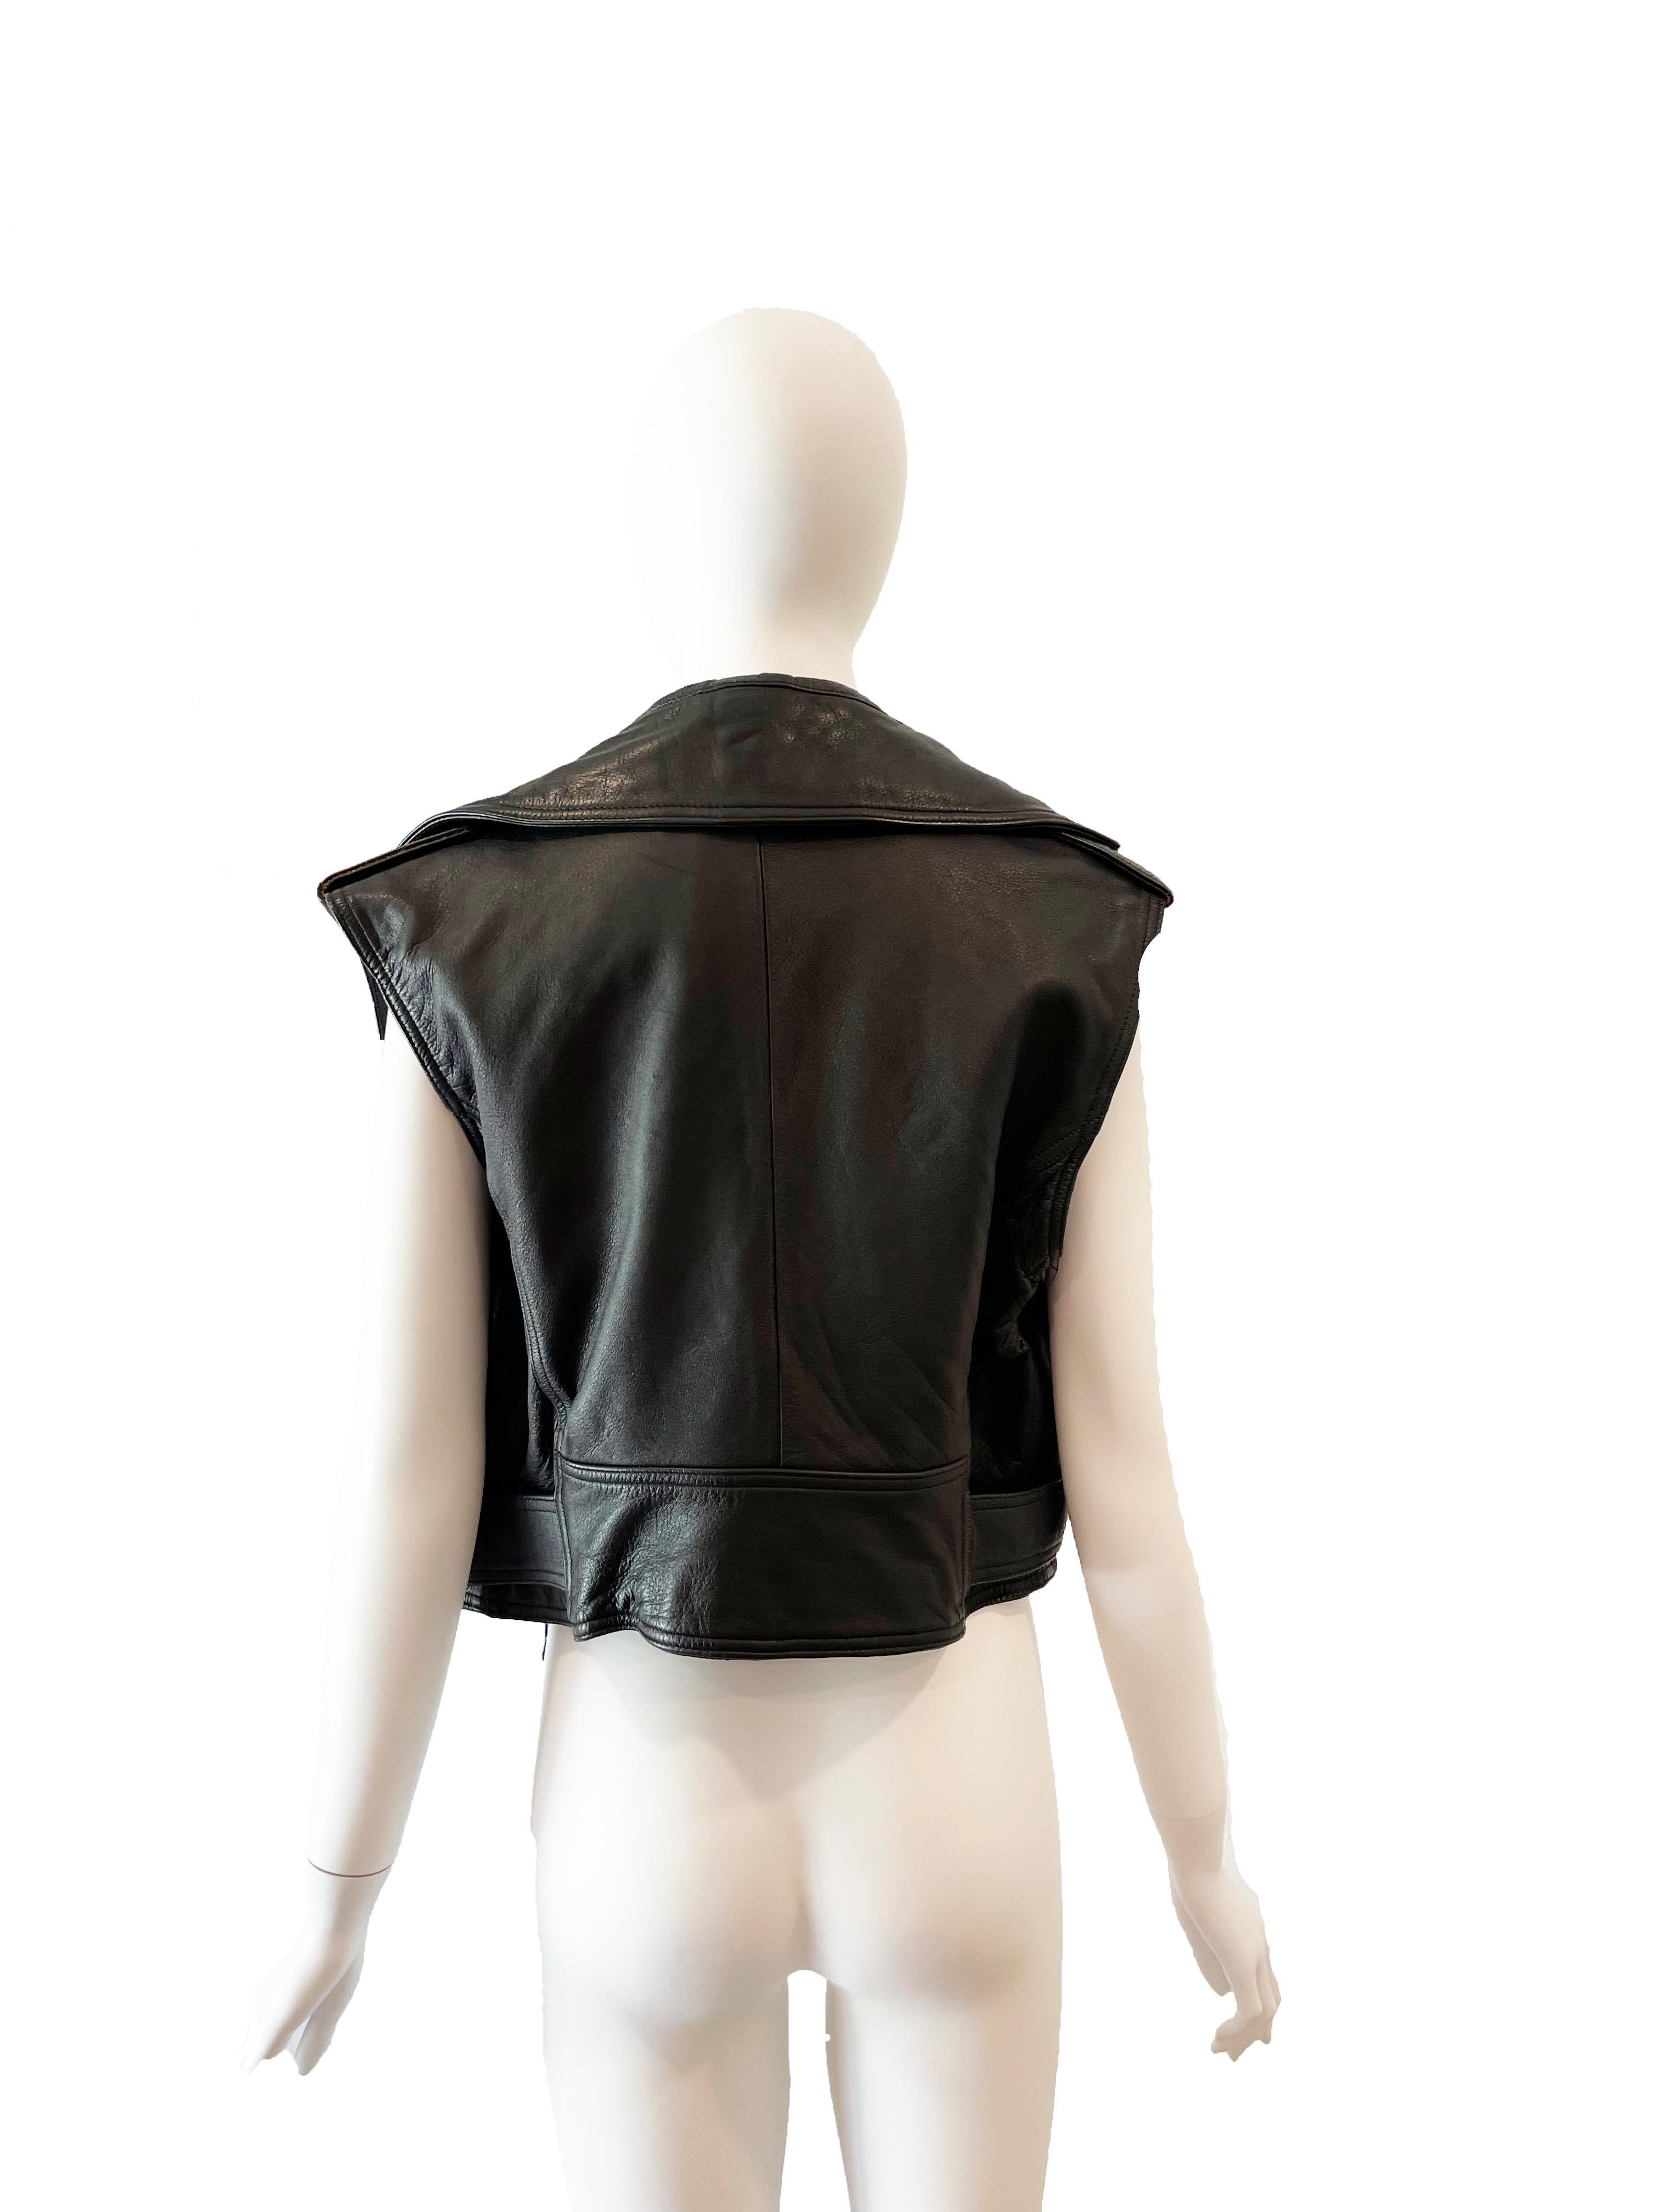 veste en cuir sans manches Jean Paul Gaultier des années 1990
Condition : Bon, usure générale
Taille L 
buste de 42